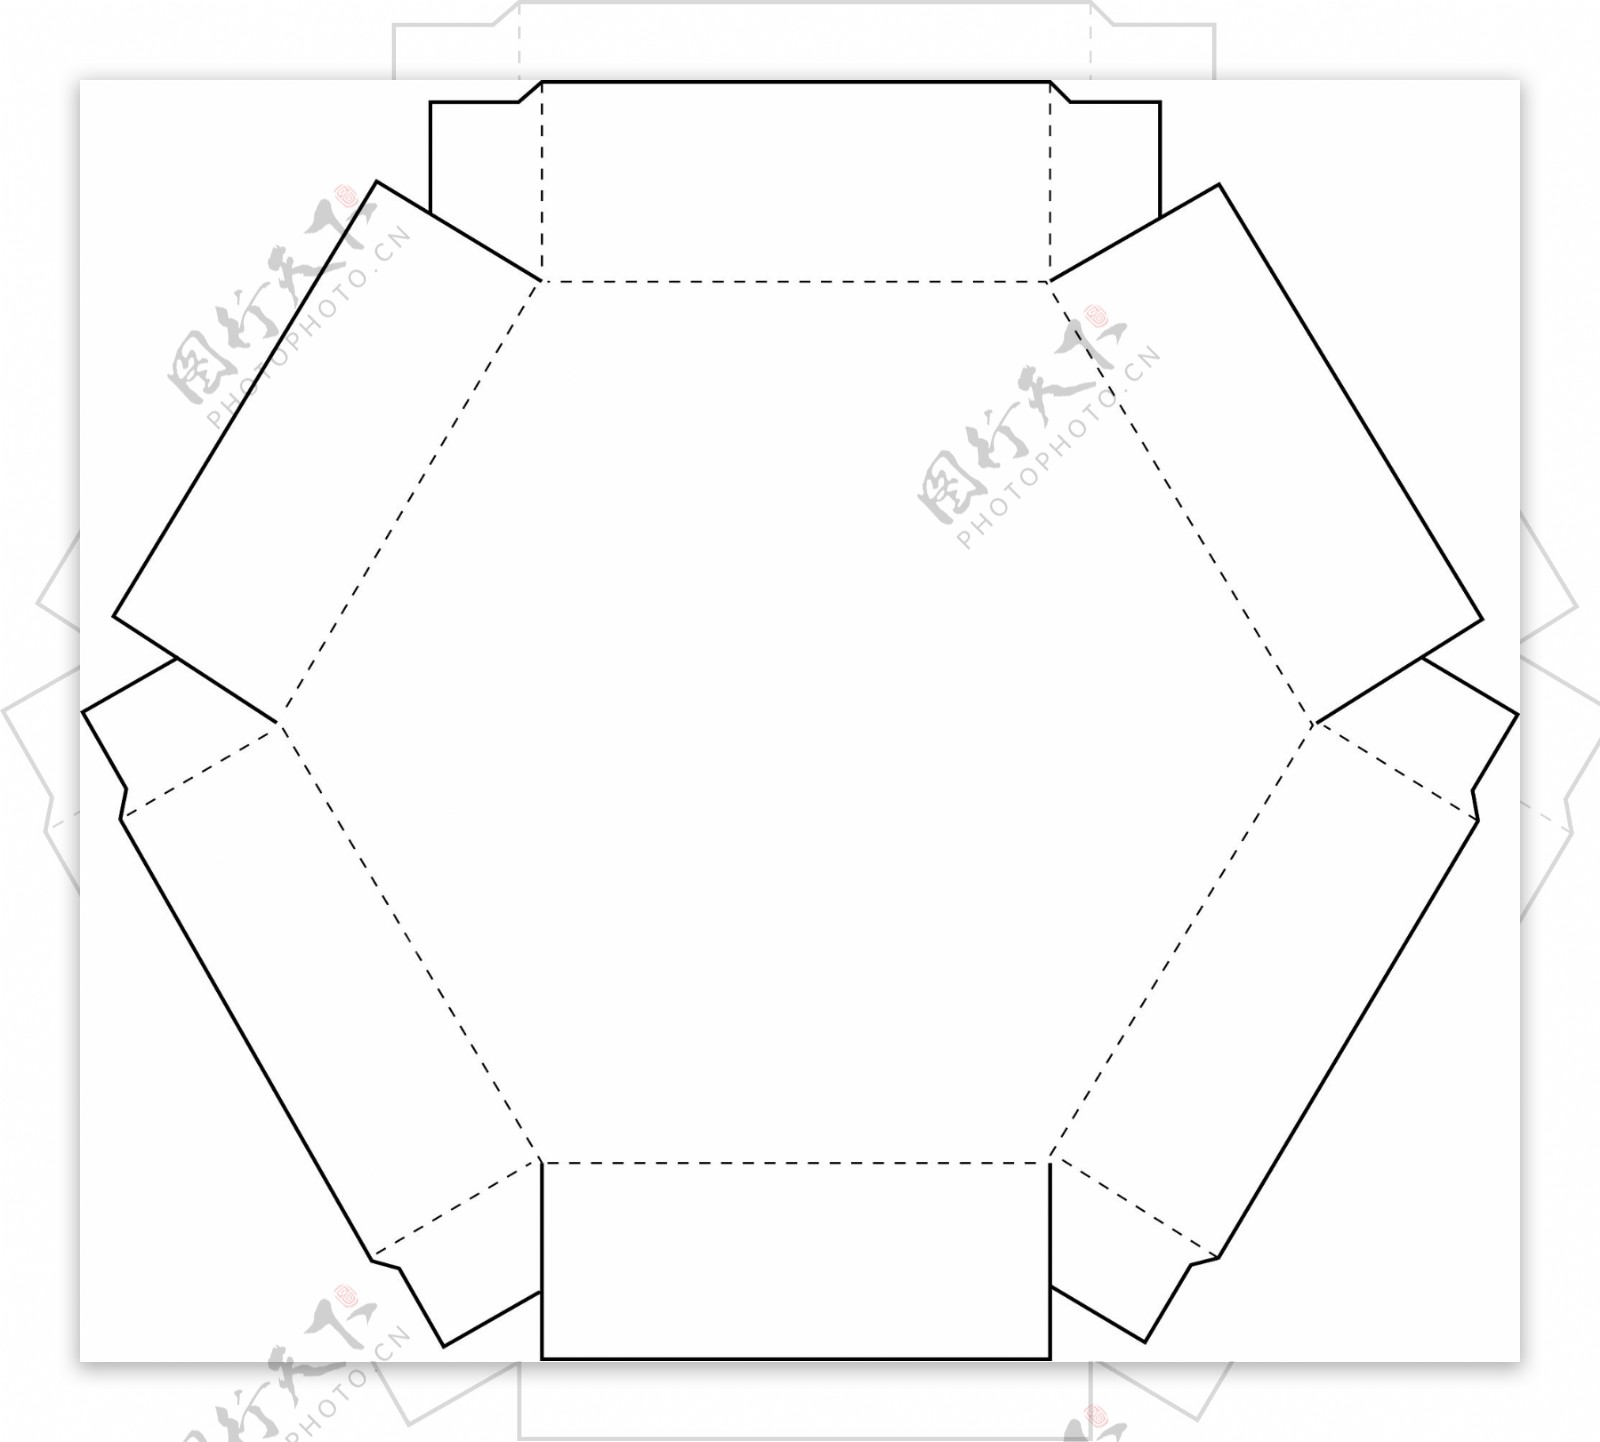 多边形拼合型包装盒结构图